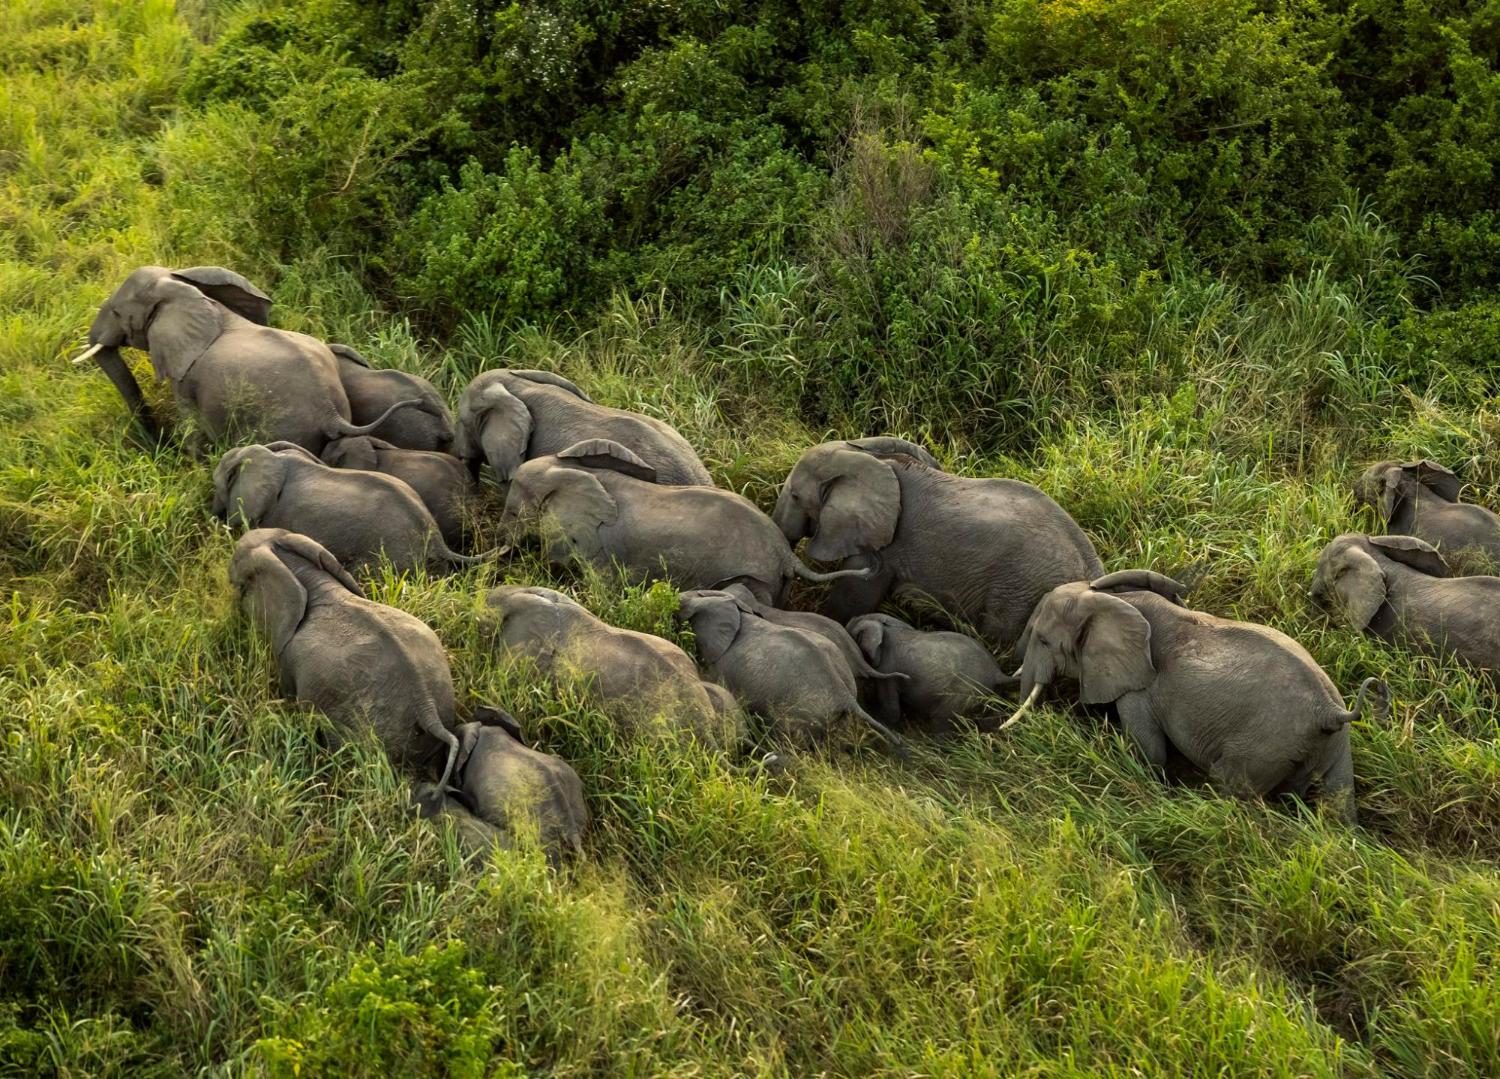 Le Zimbabwe, pays hôte d’une conférence sur les éléphants d’Afrique